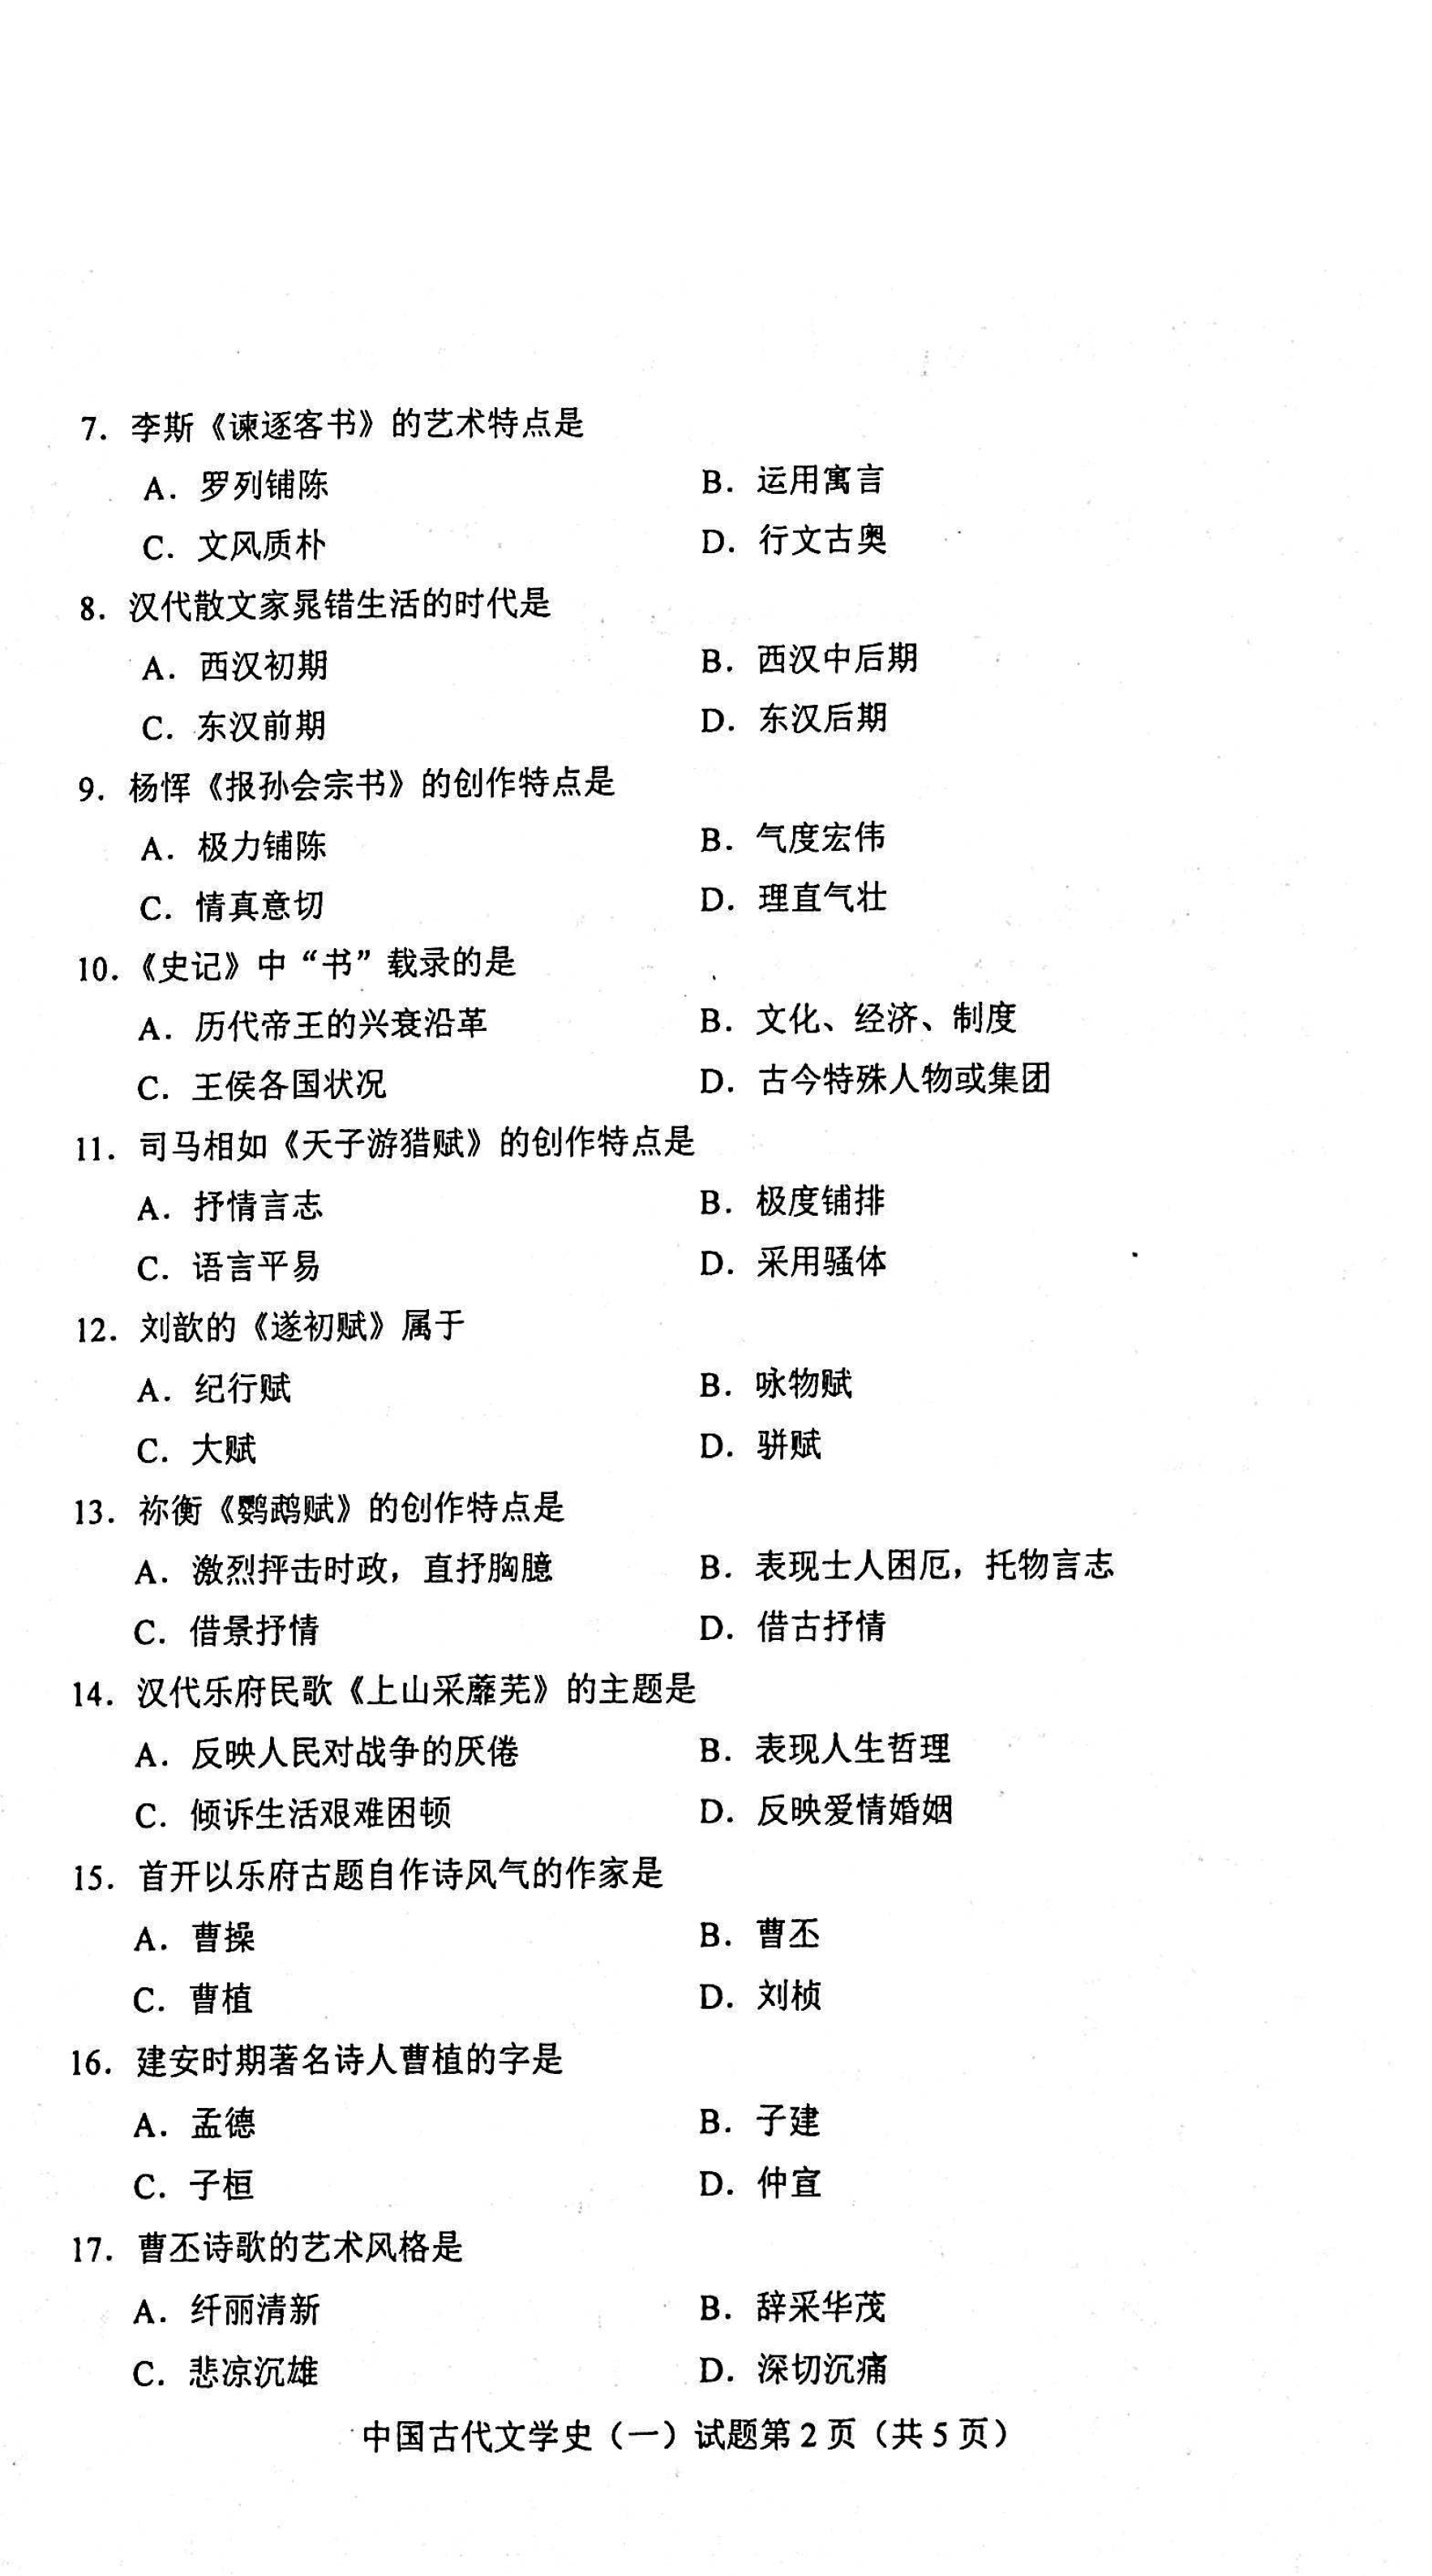 贵州自考2021年04月份00538中国古代文学史(一)试题及答案